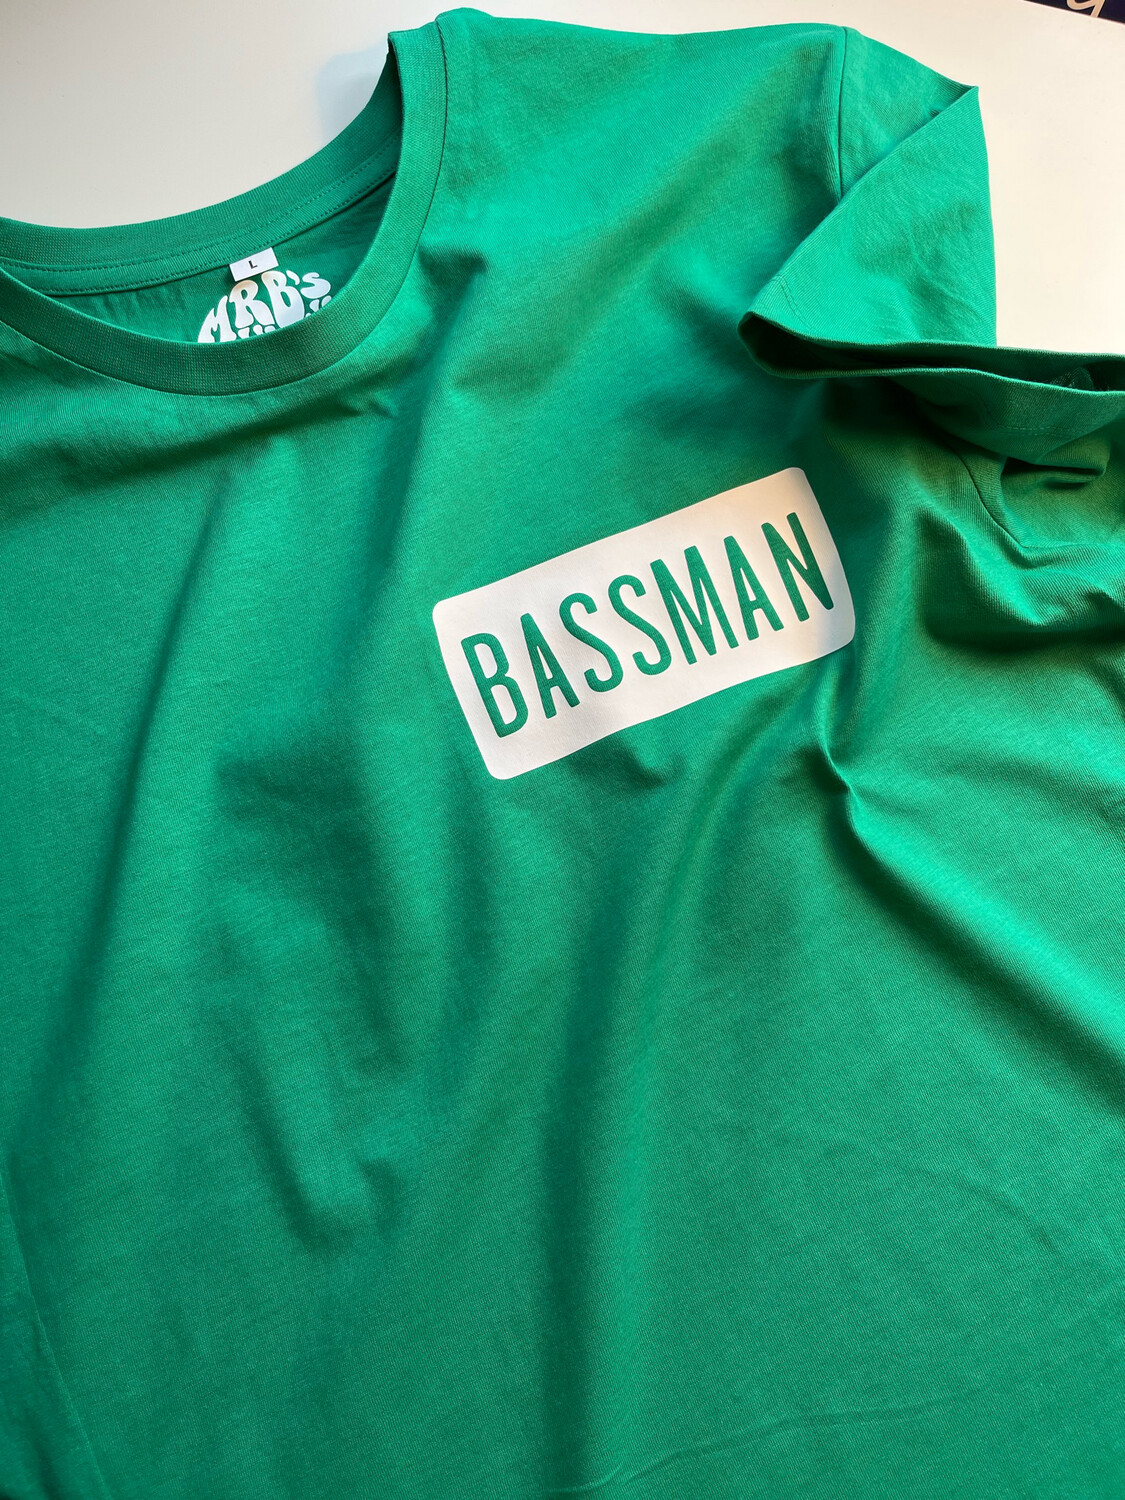 Bassman “The Beatles” Inspired Lightweight Organic Cotton T Shirt